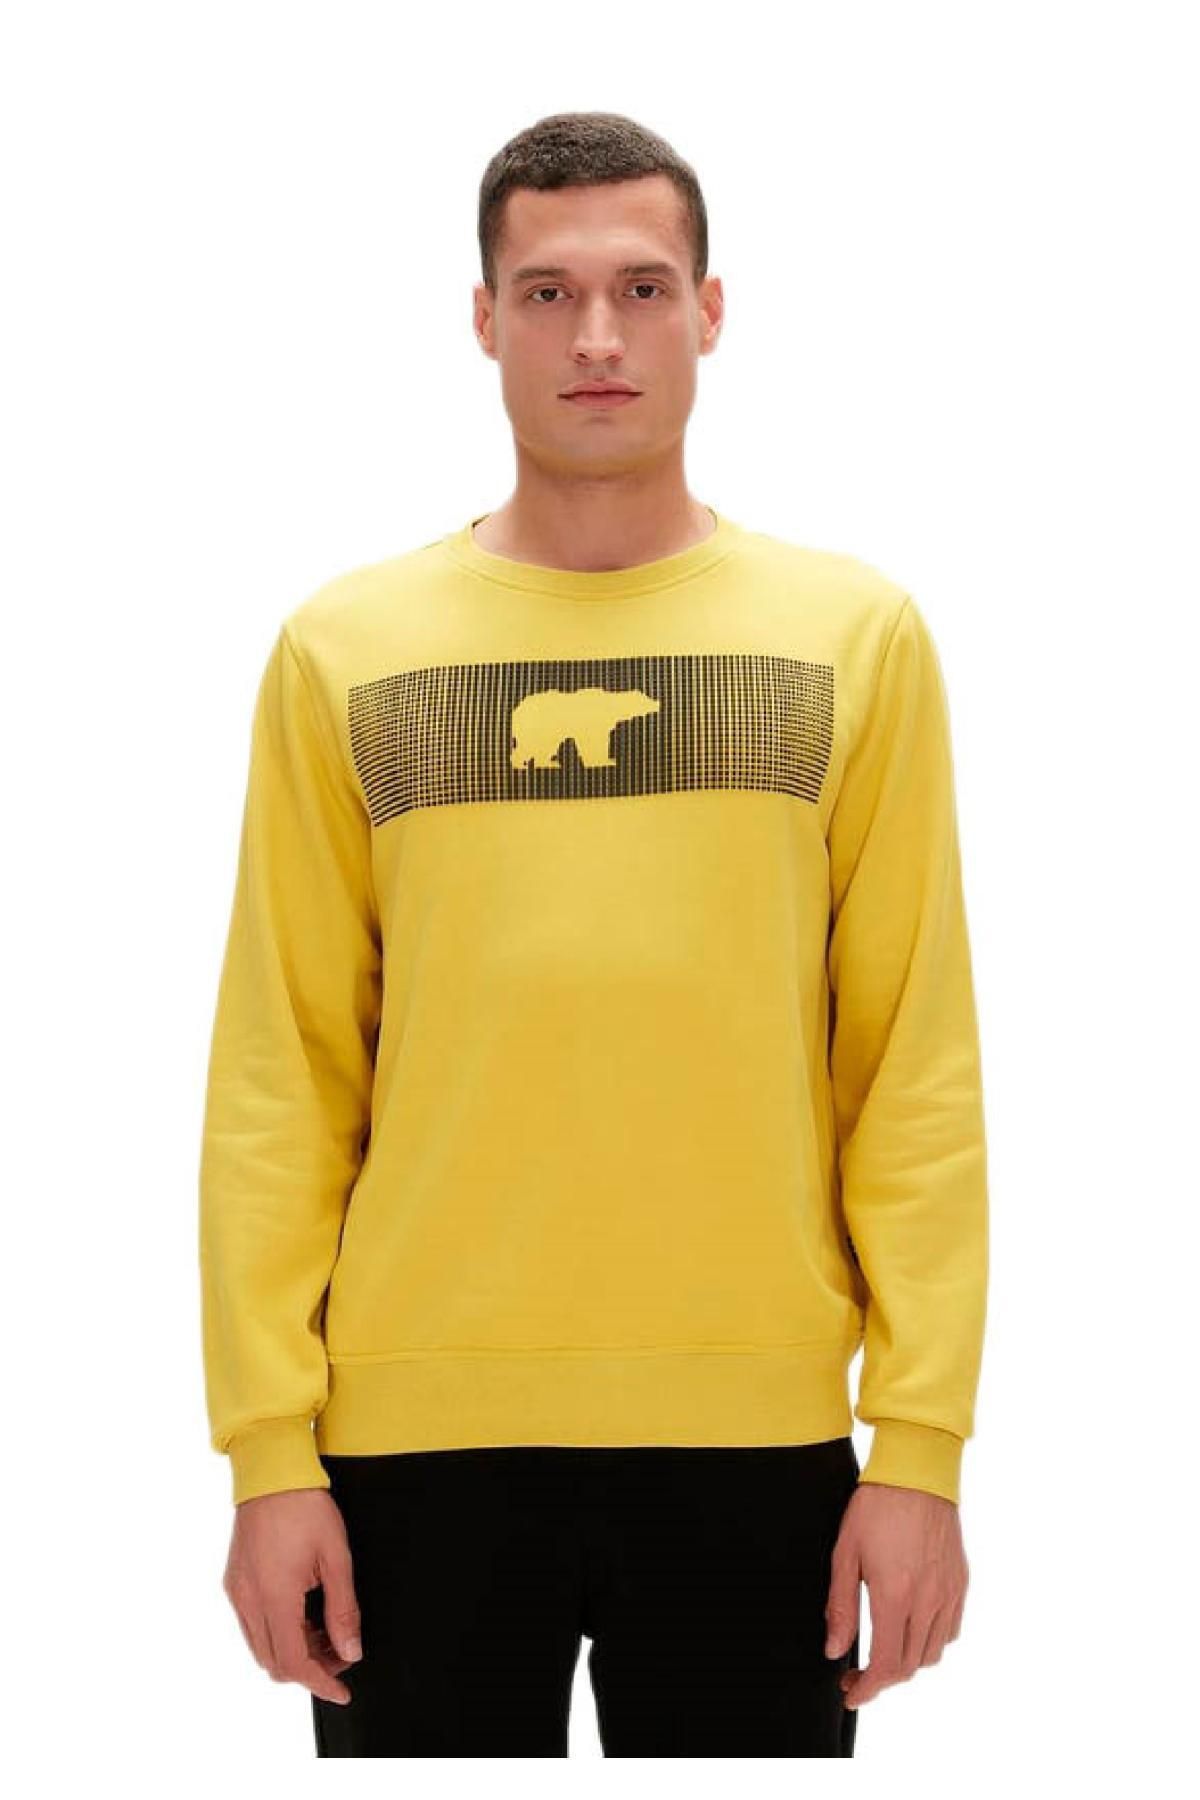 Bad Bear 19.02.12.007 Fancy Crewneck 3Dbaski Sweat Sarı Erkek Sweatshirt